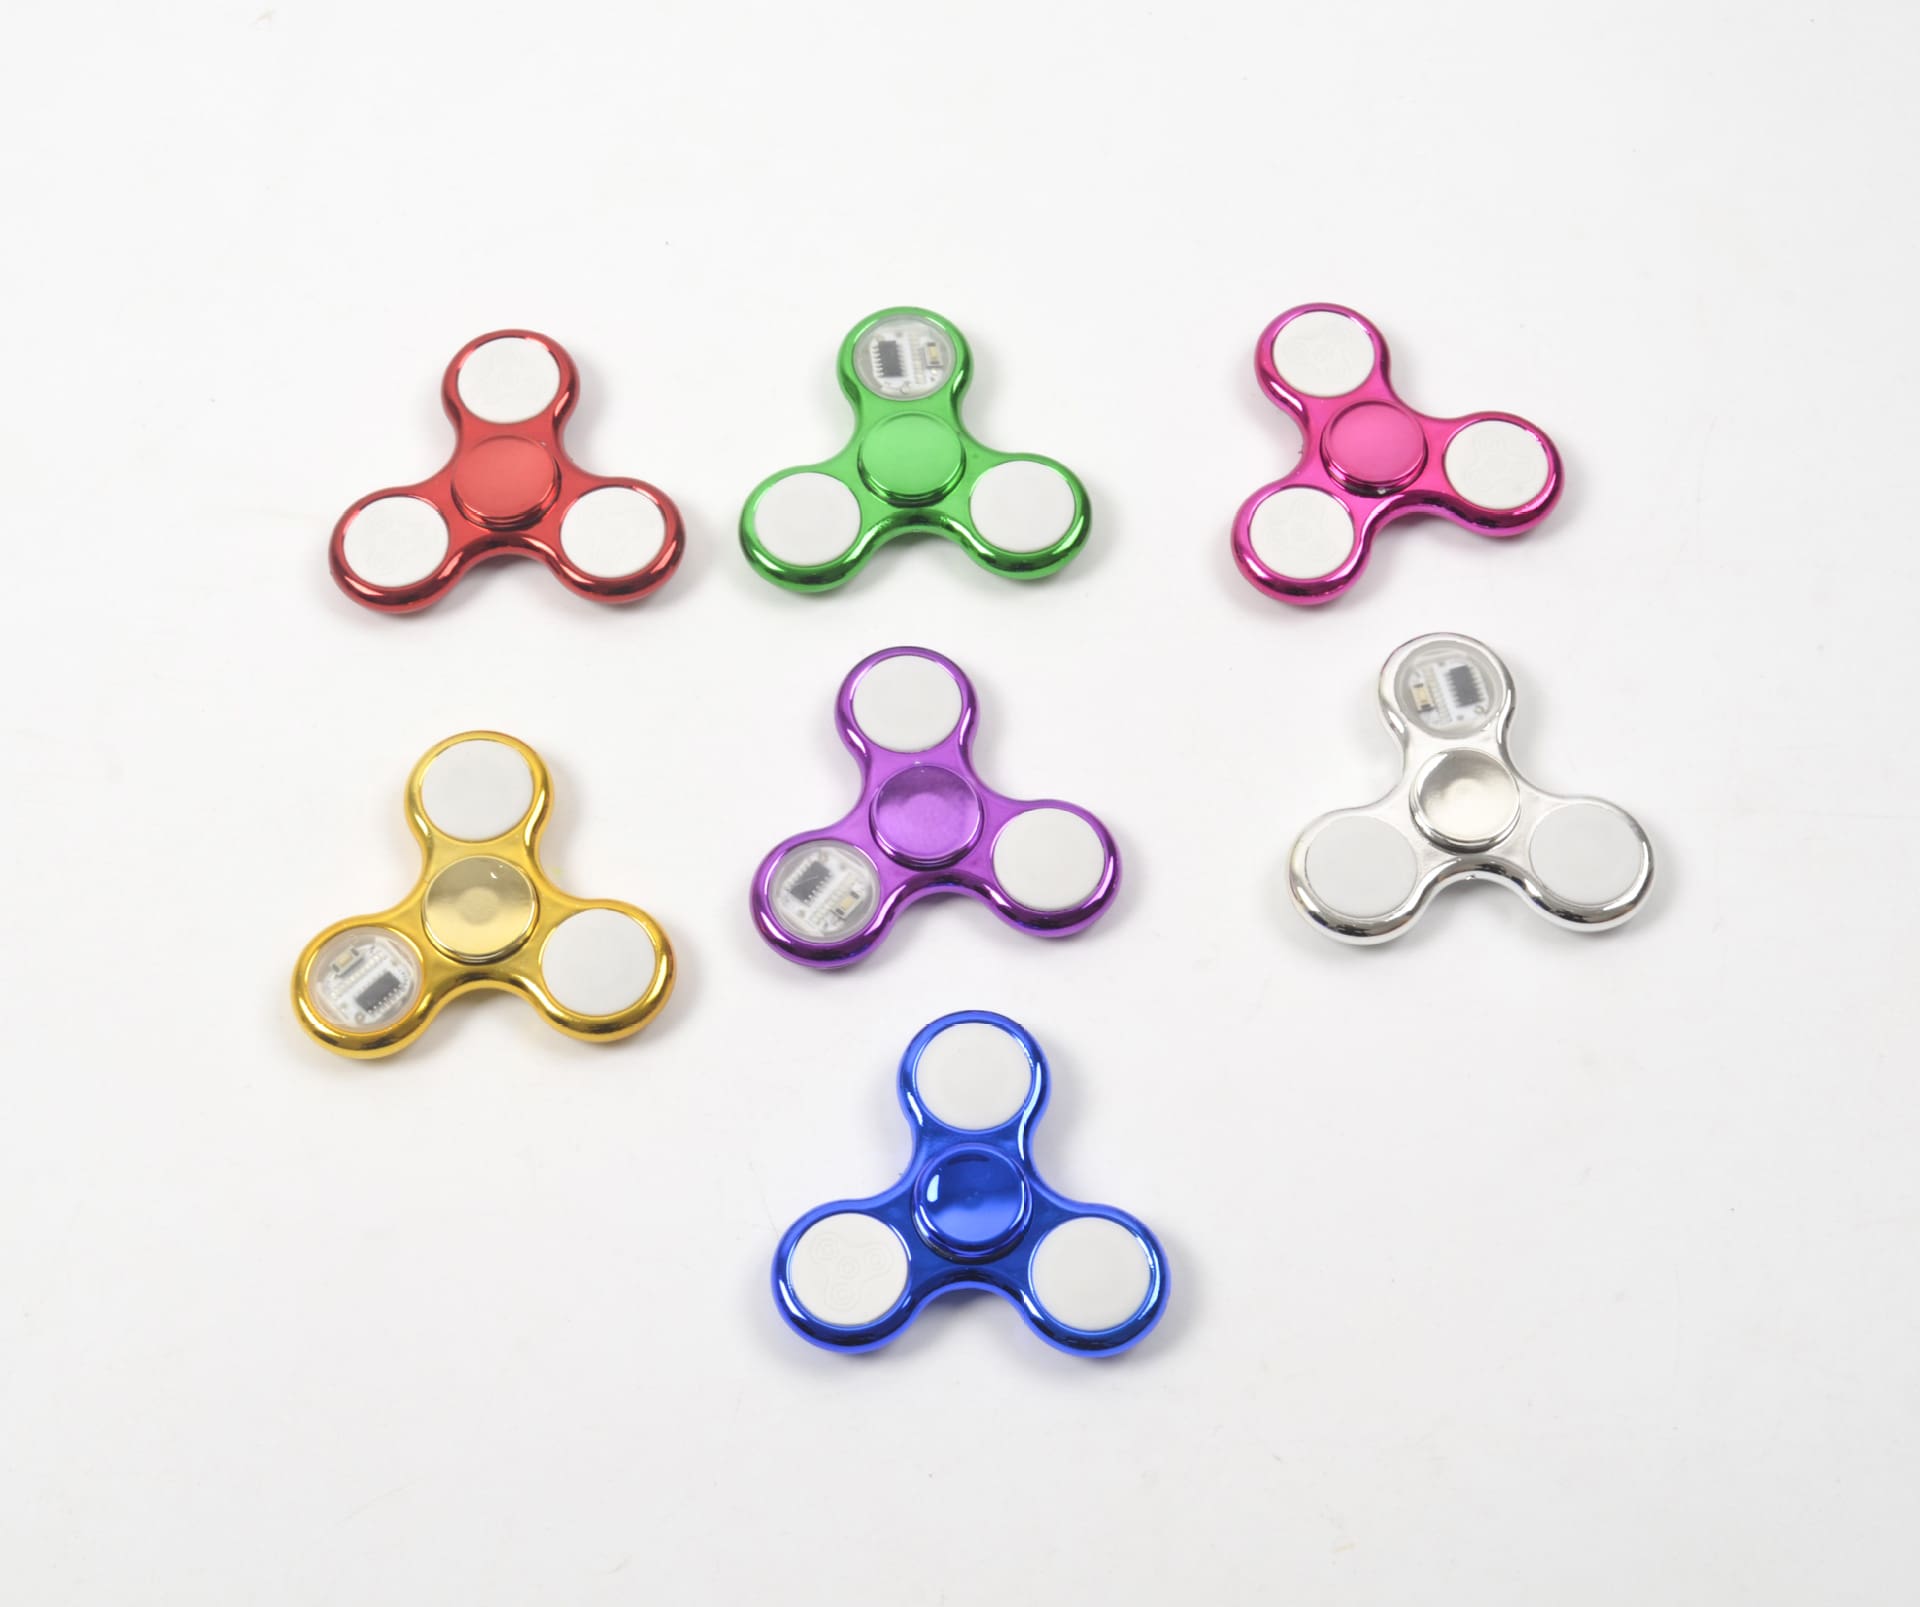 6 Colors LED Light Luminous Fidget Spinner Toy For Kids